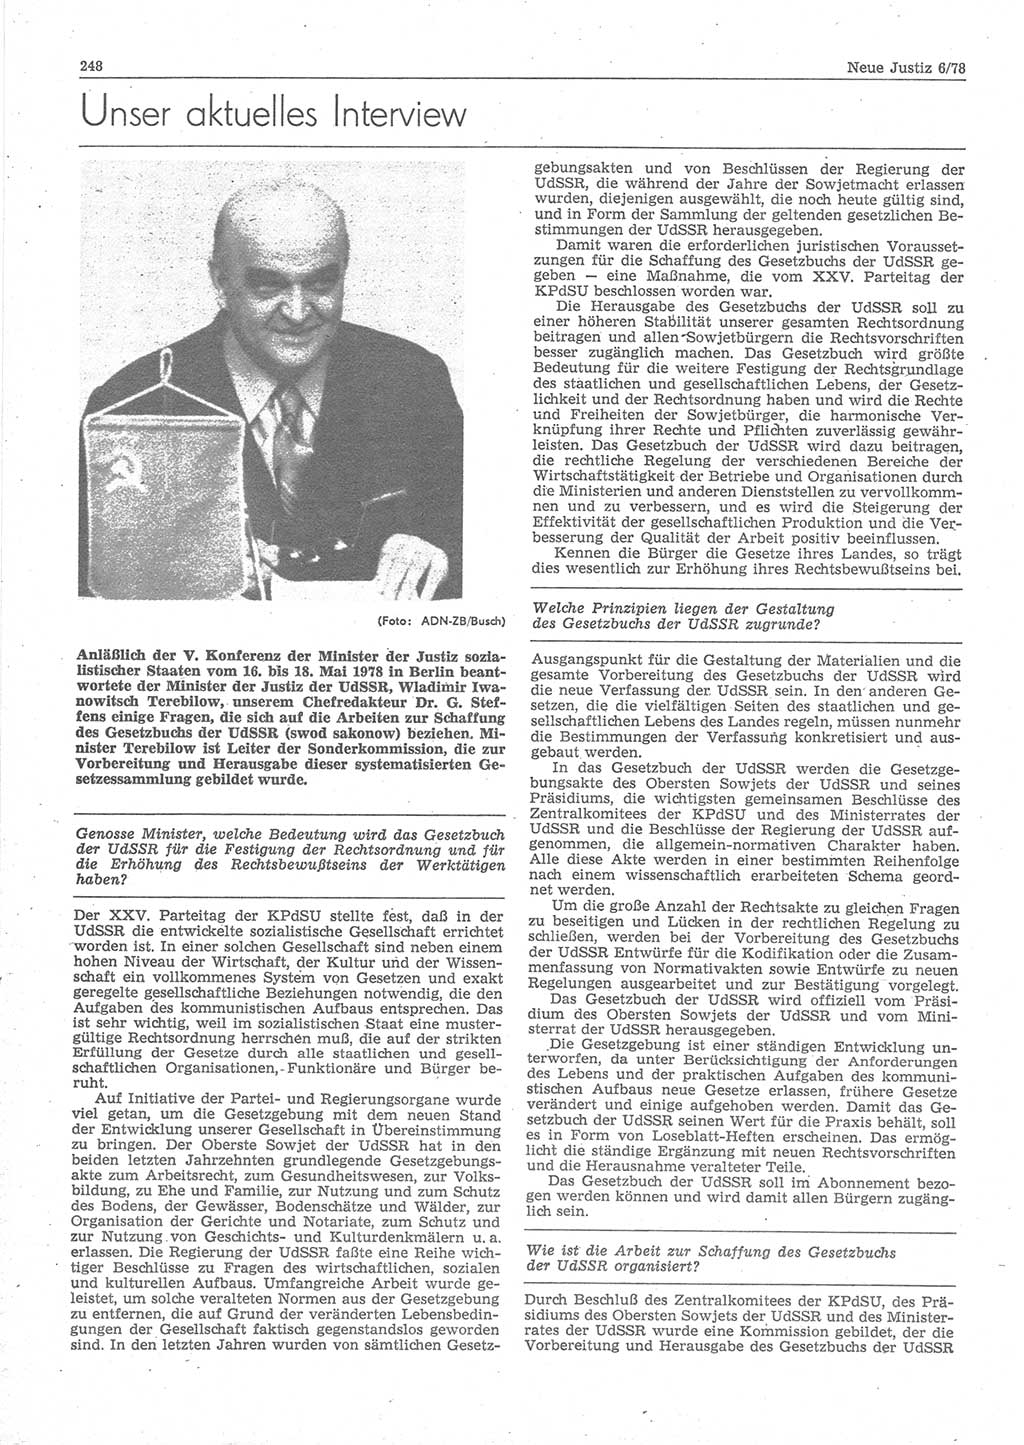 Neue Justiz (NJ), Zeitschrift für sozialistisches Recht und Gesetzlichkeit [Deutsche Demokratische Republik (DDR)], 32. Jahrgang 1978, Seite 248 (NJ DDR 1978, S. 248)